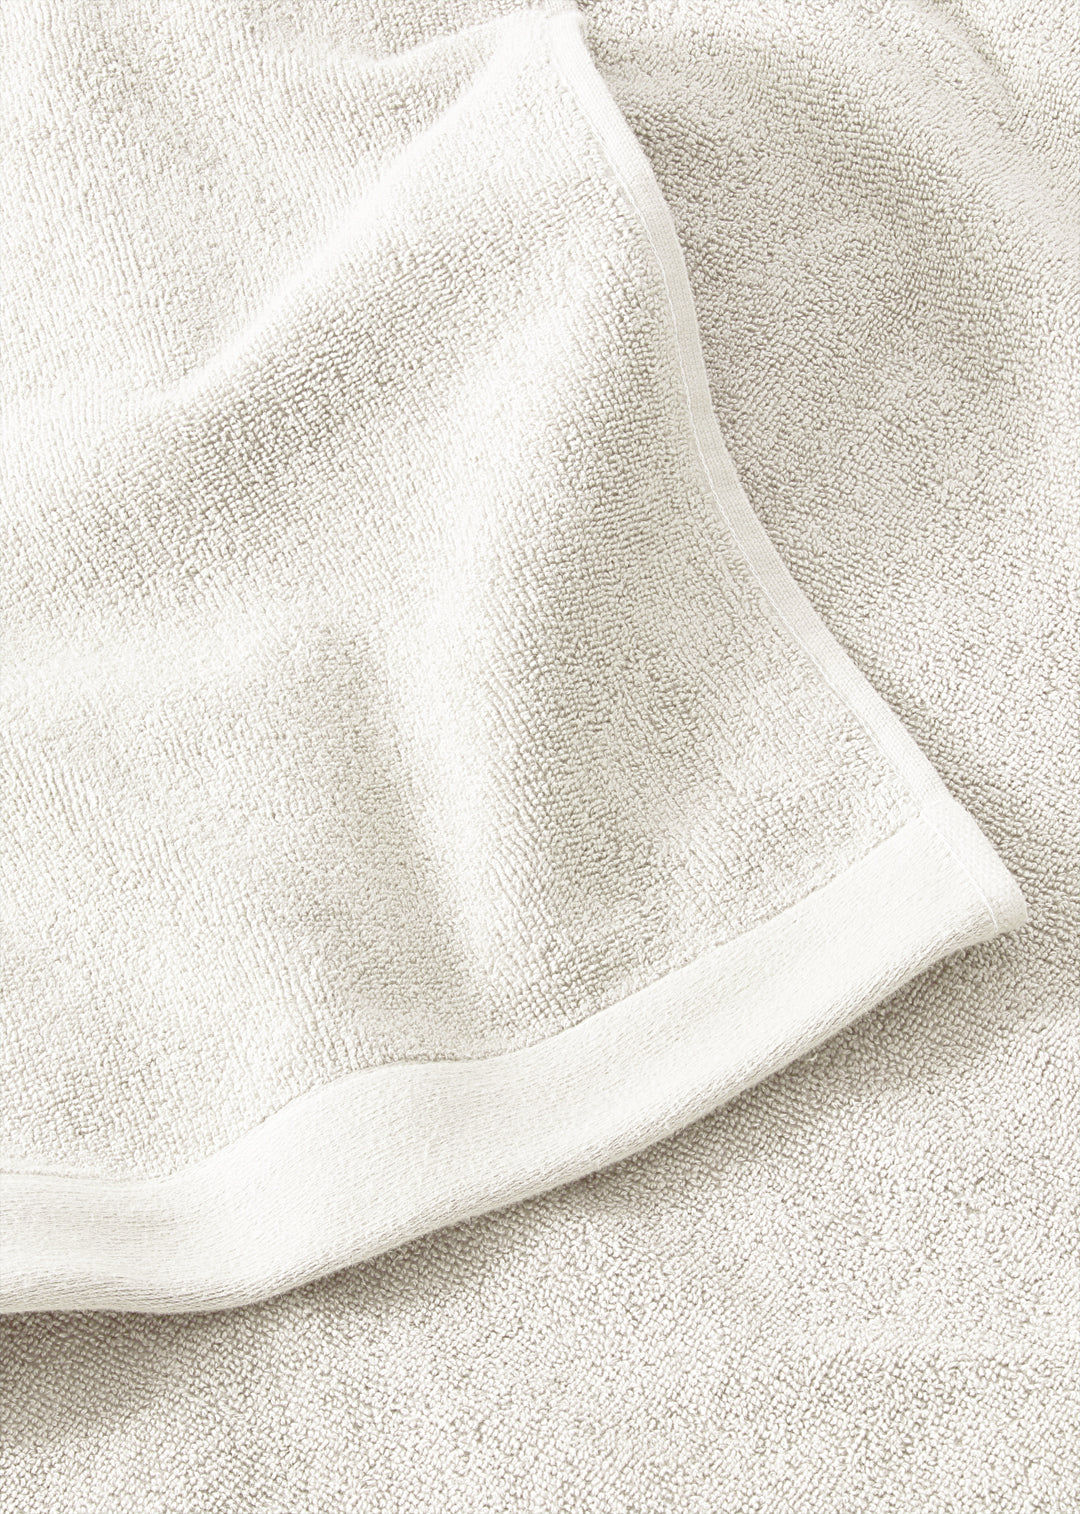 Handtuch Baumwolle Weiß 50 x 70 cm